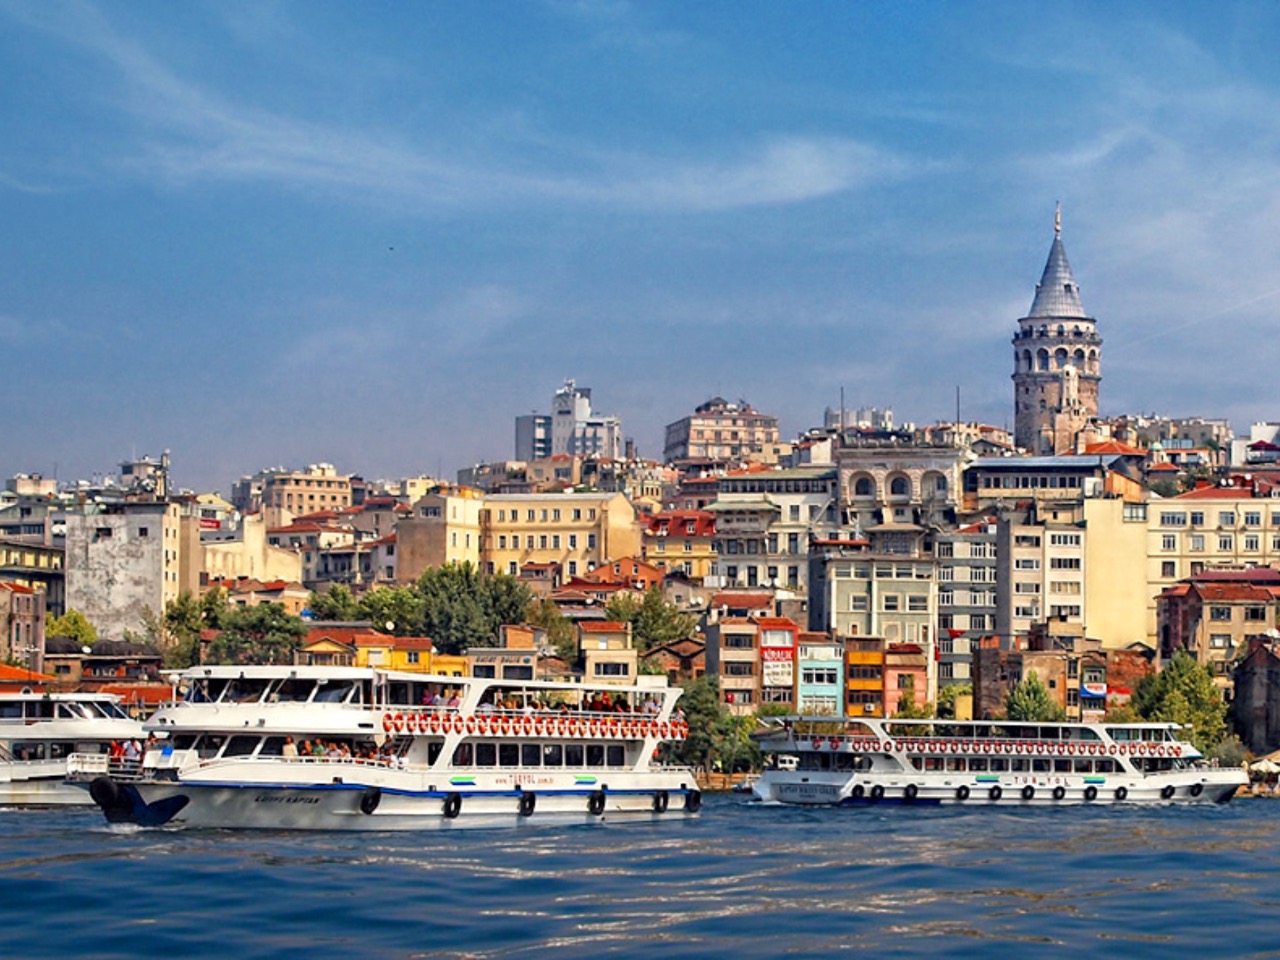 Два лица Стамбула: от Айя-Софии к Галатской башне | Цена 214€, отзывы, описание экскурсии